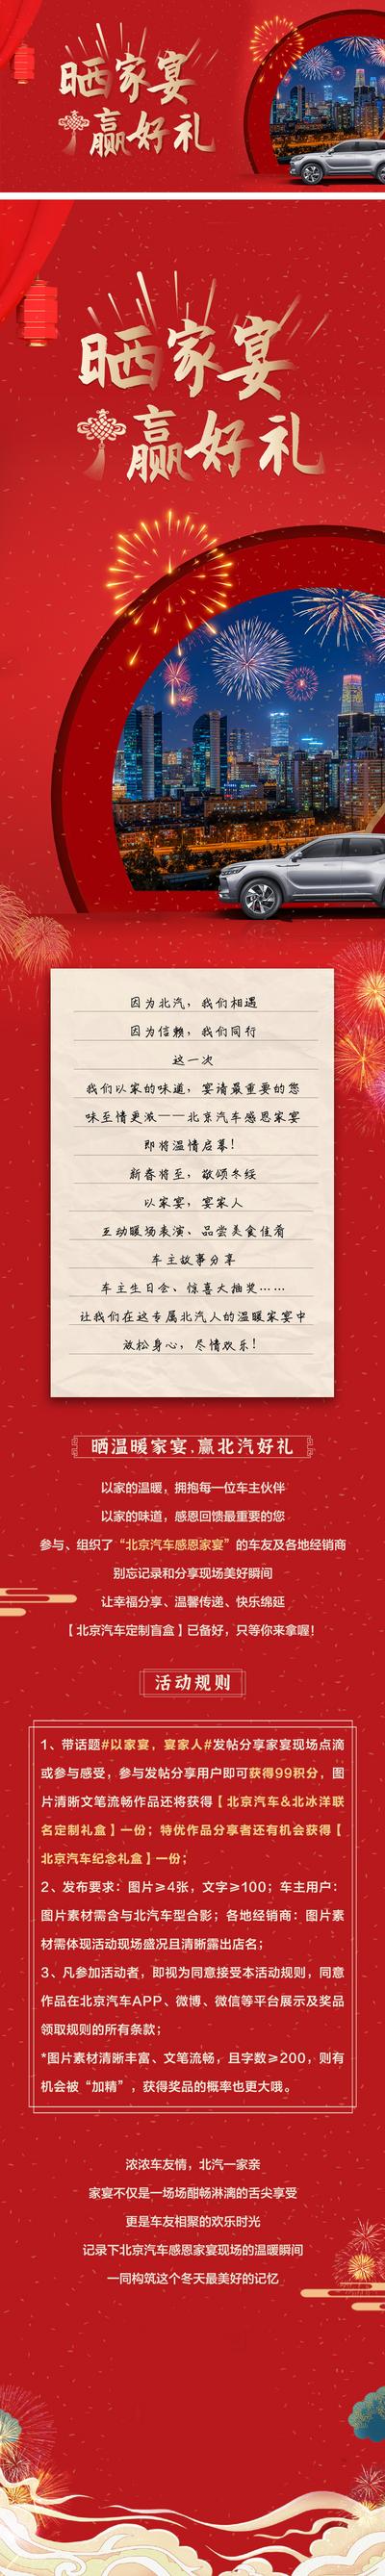 南门网 海报 广告展板 中国传统节日 新年 汽车 团圆 家宴